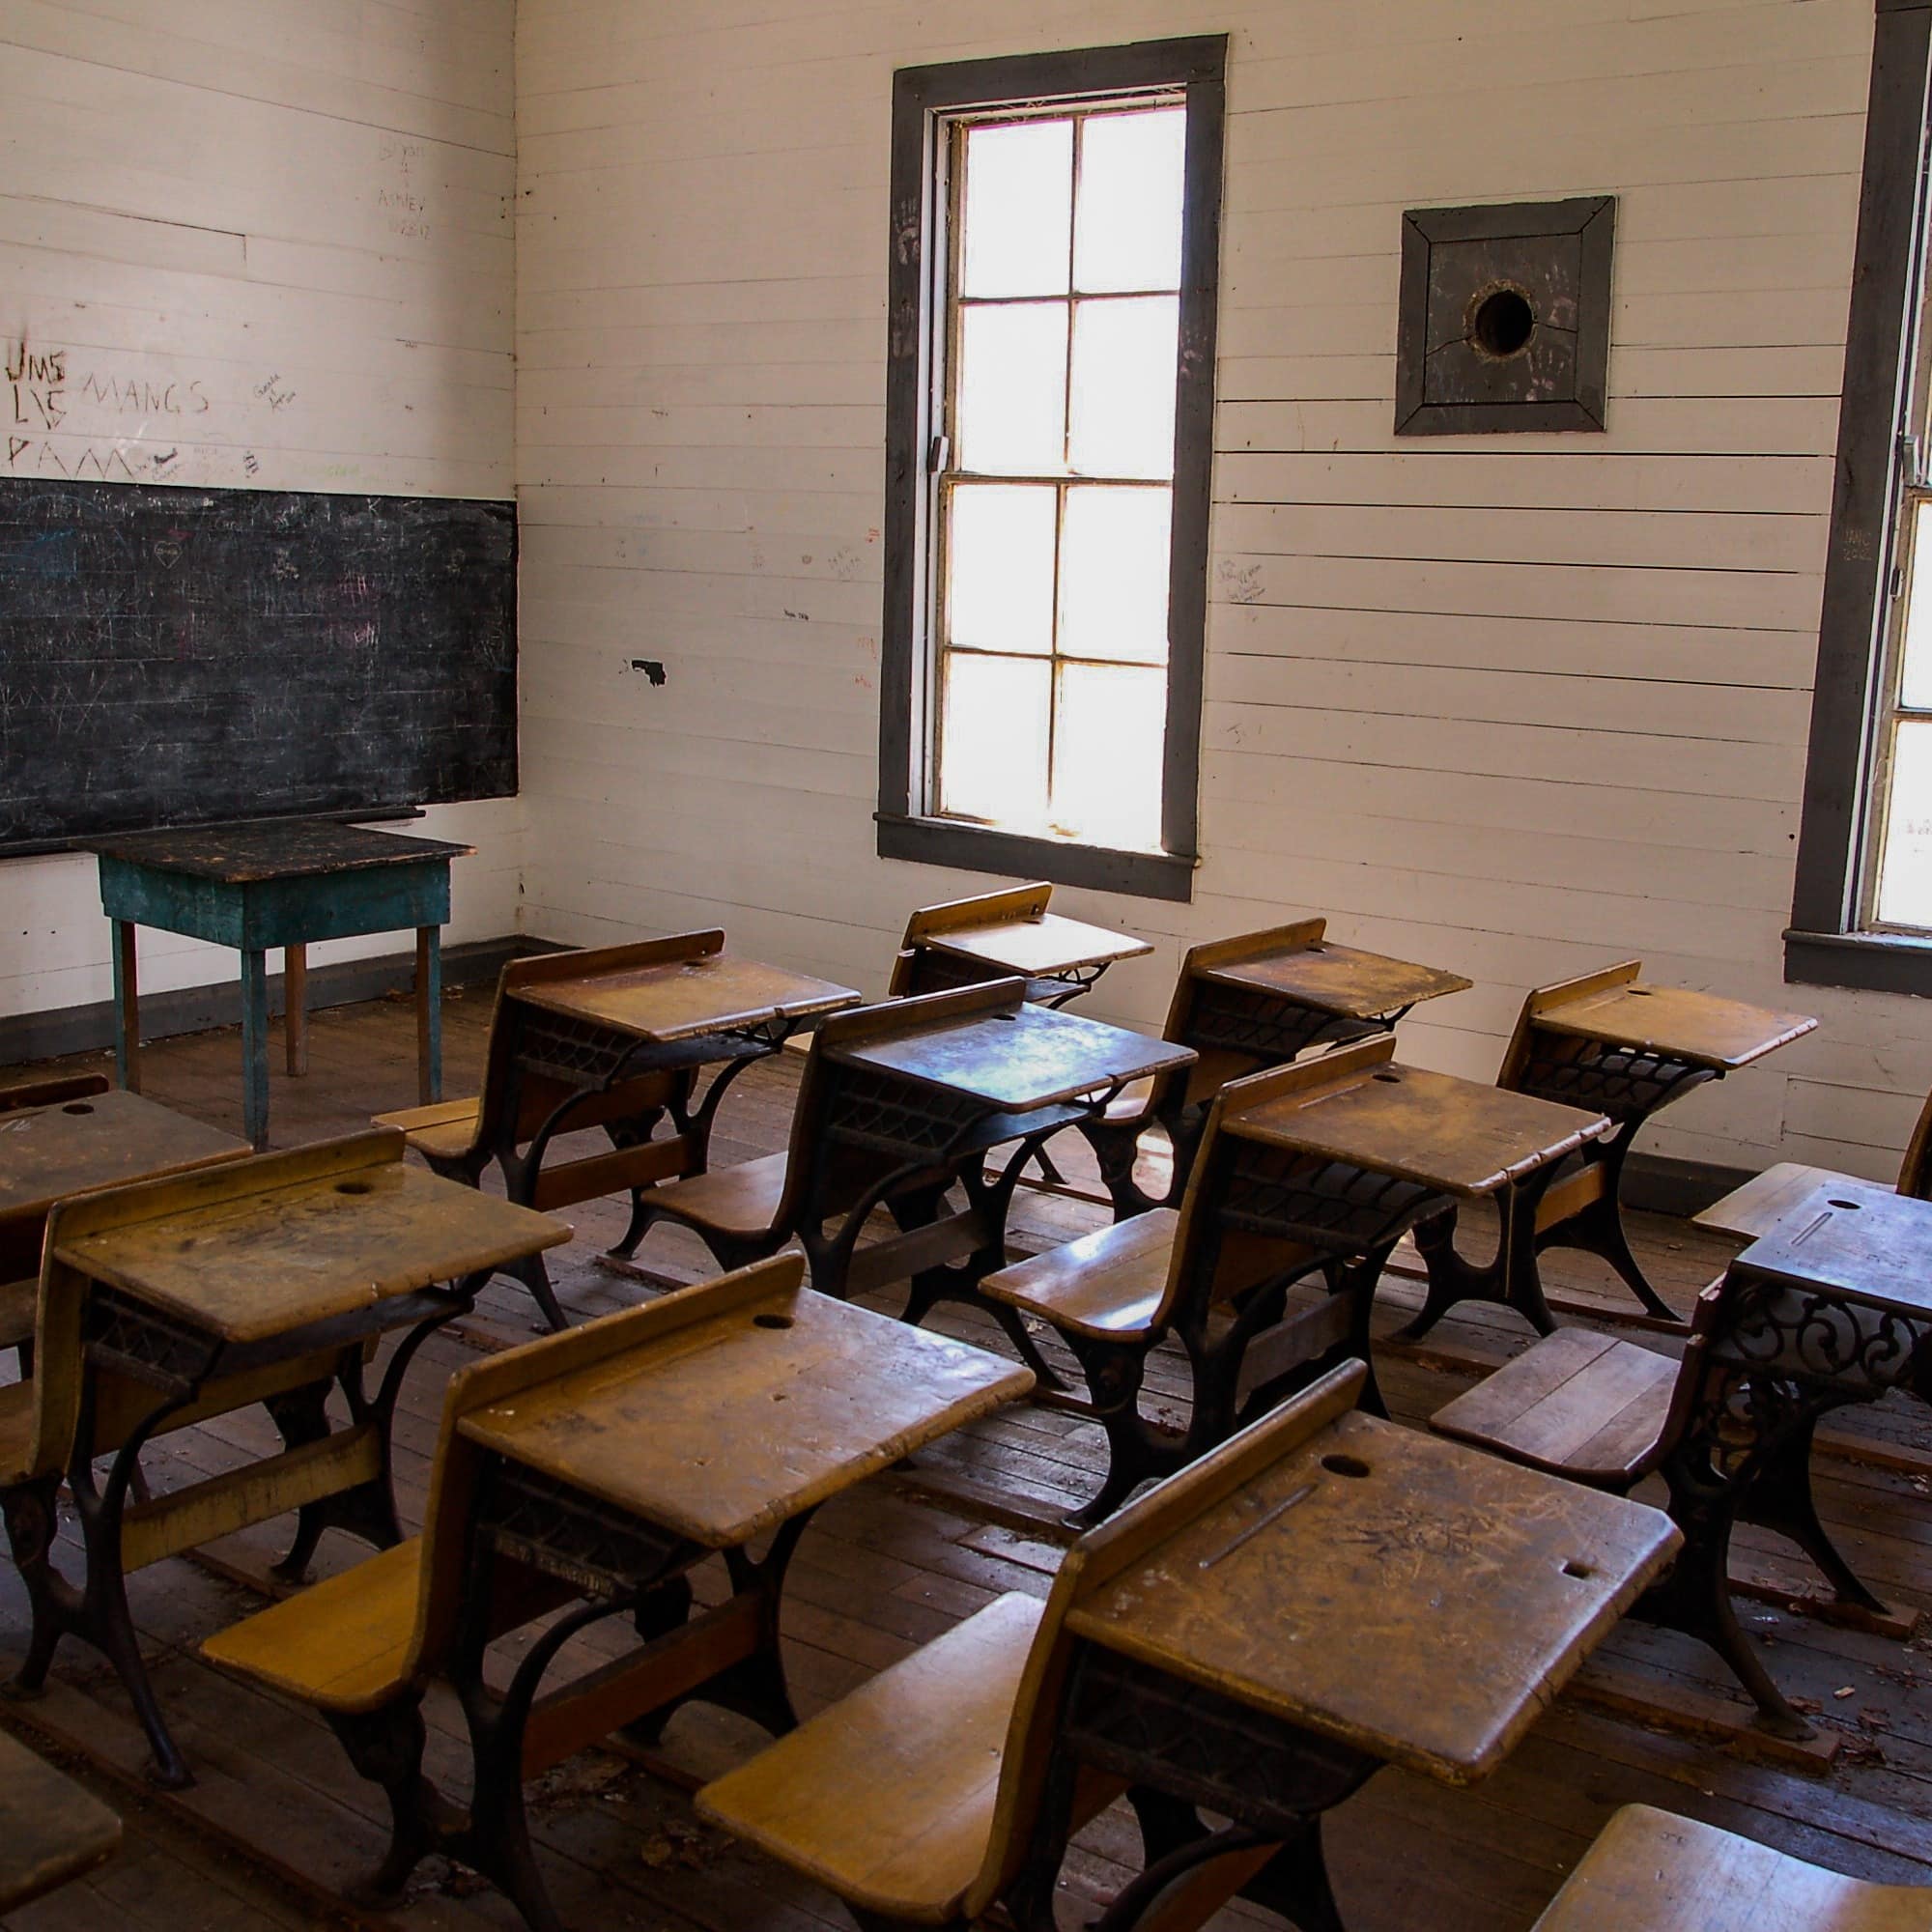 Ein altmodisches Klassenzimmer mit Tafel und Holzfußboden